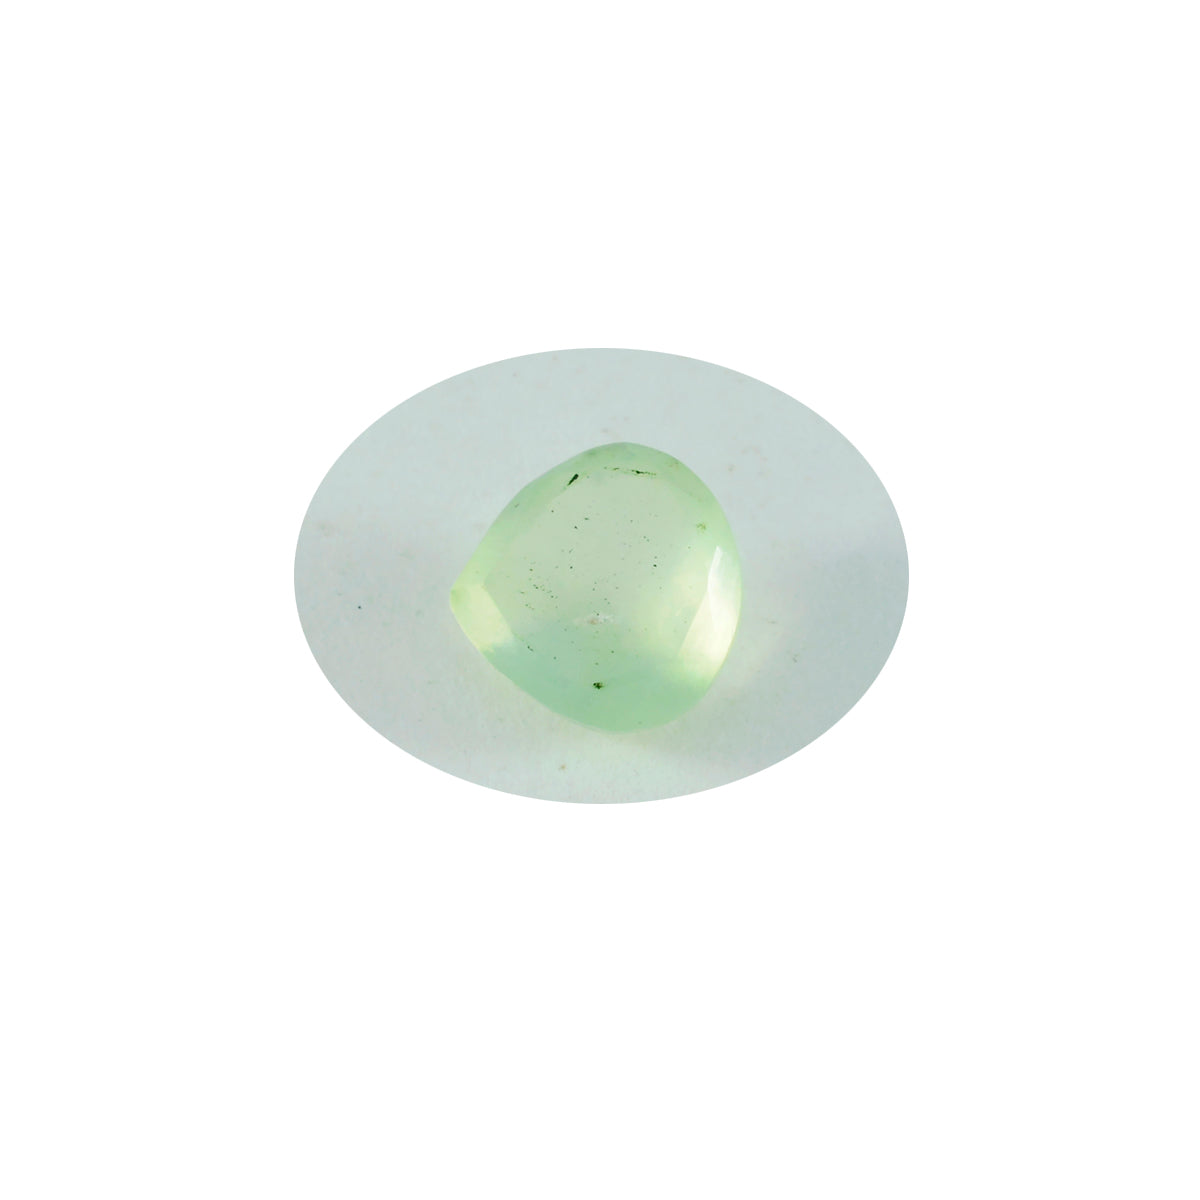 riyogems 1шт зеленый пренит граненые 9x9 мм милые качественные драгоценные камни в форме сердца